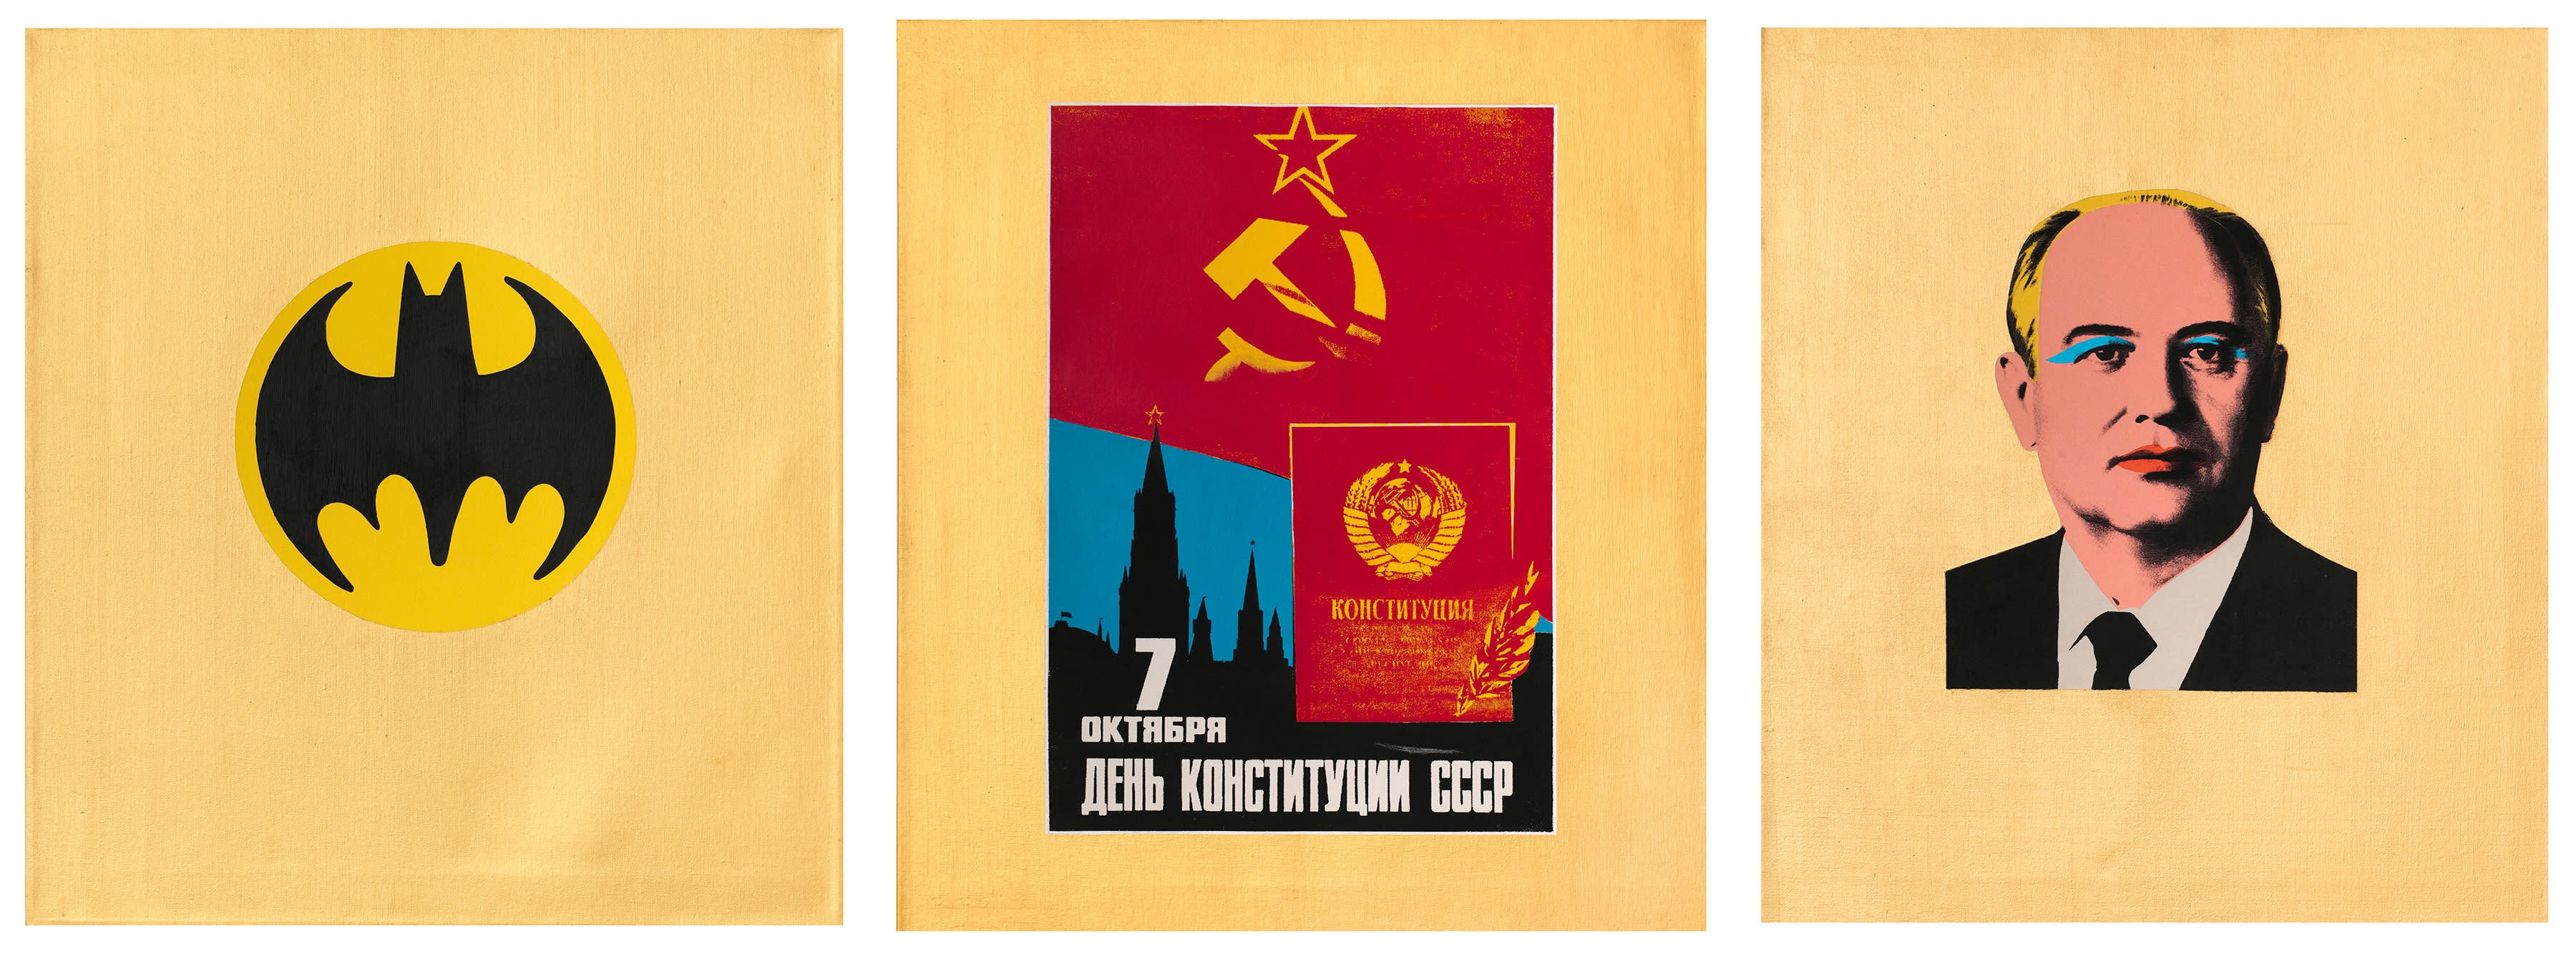 Gorbachev (triptych) by Alexander Kosolapov, 1990